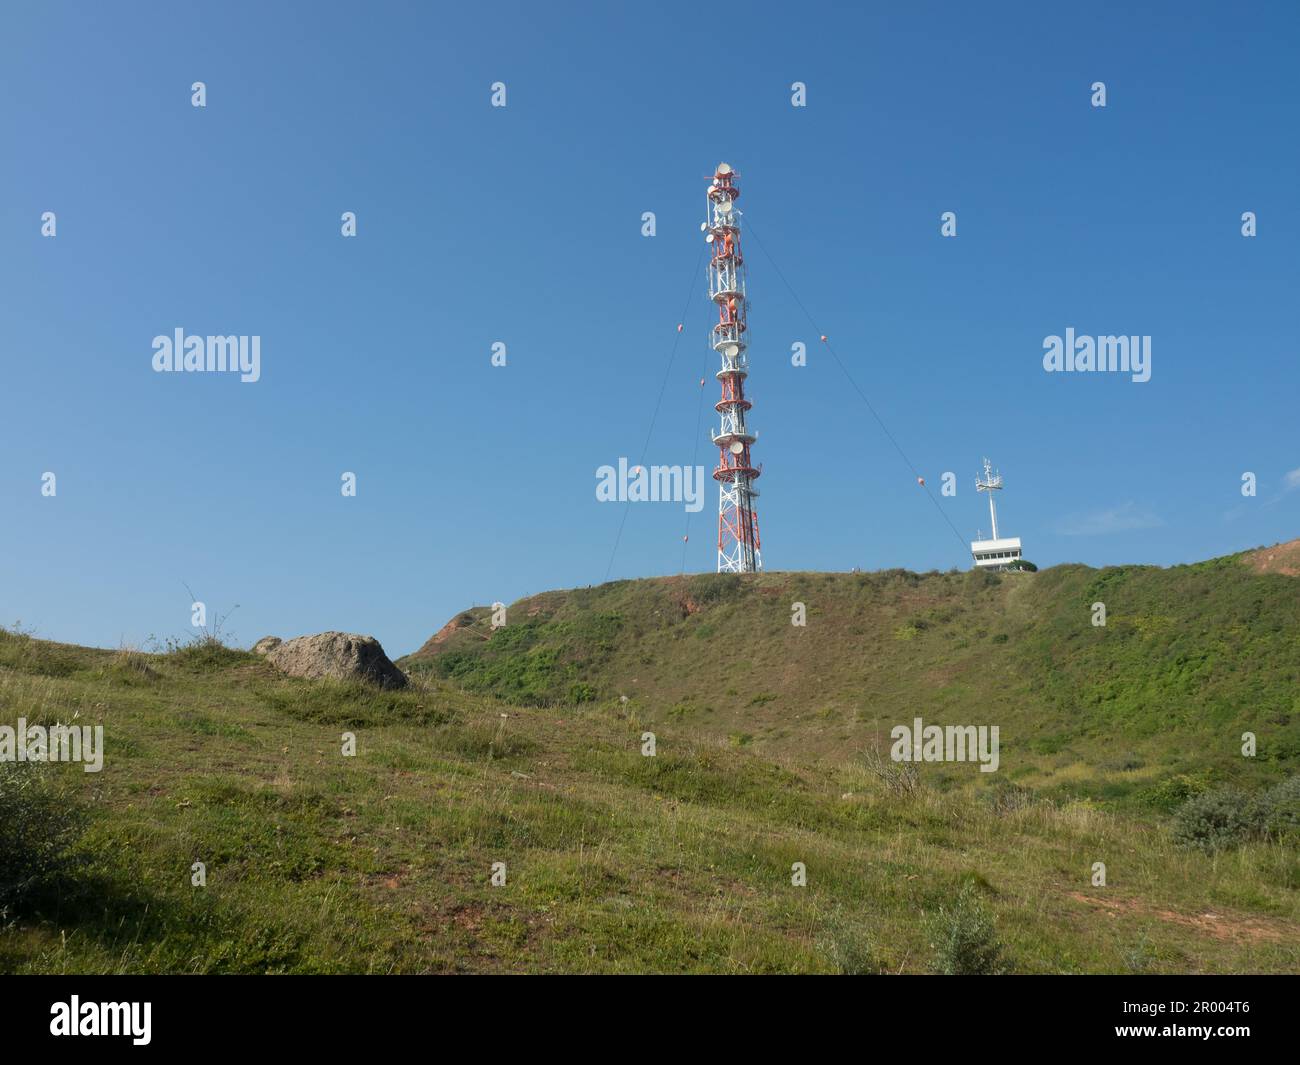 Une tour cellulaire au sommet d'une colline entourée d'un ciel bleu Banque D'Images